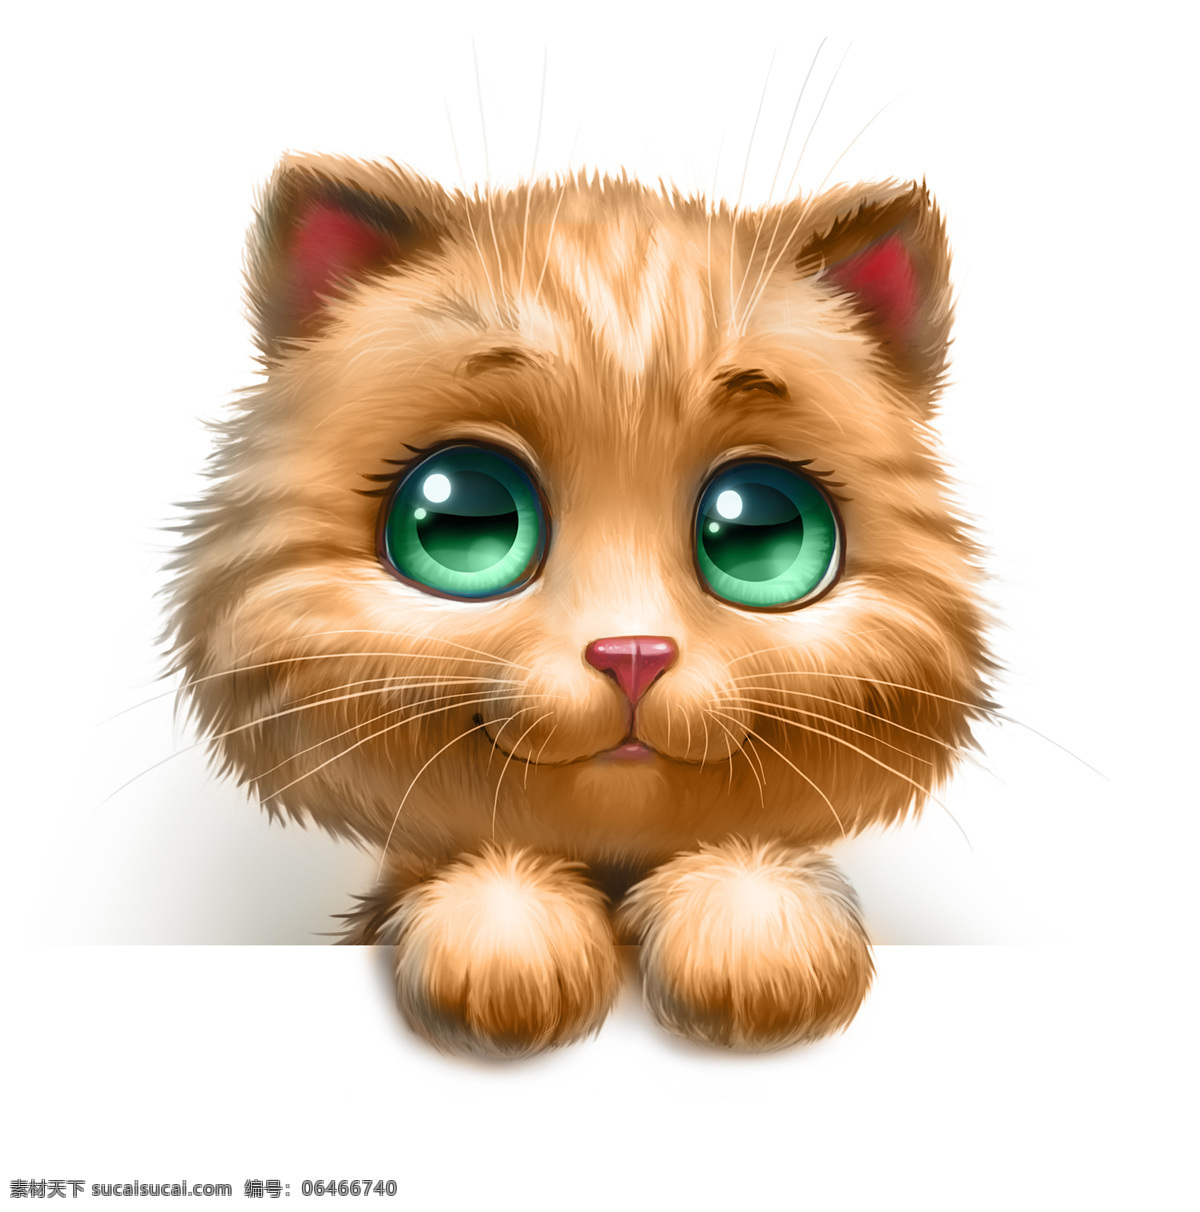 绿色 眼睛 猫 黄色小猫 卡通猫 3d动物 立体动物 陆地动物 动物世界 卡通动物 漫画动物 其他类别 生活百科